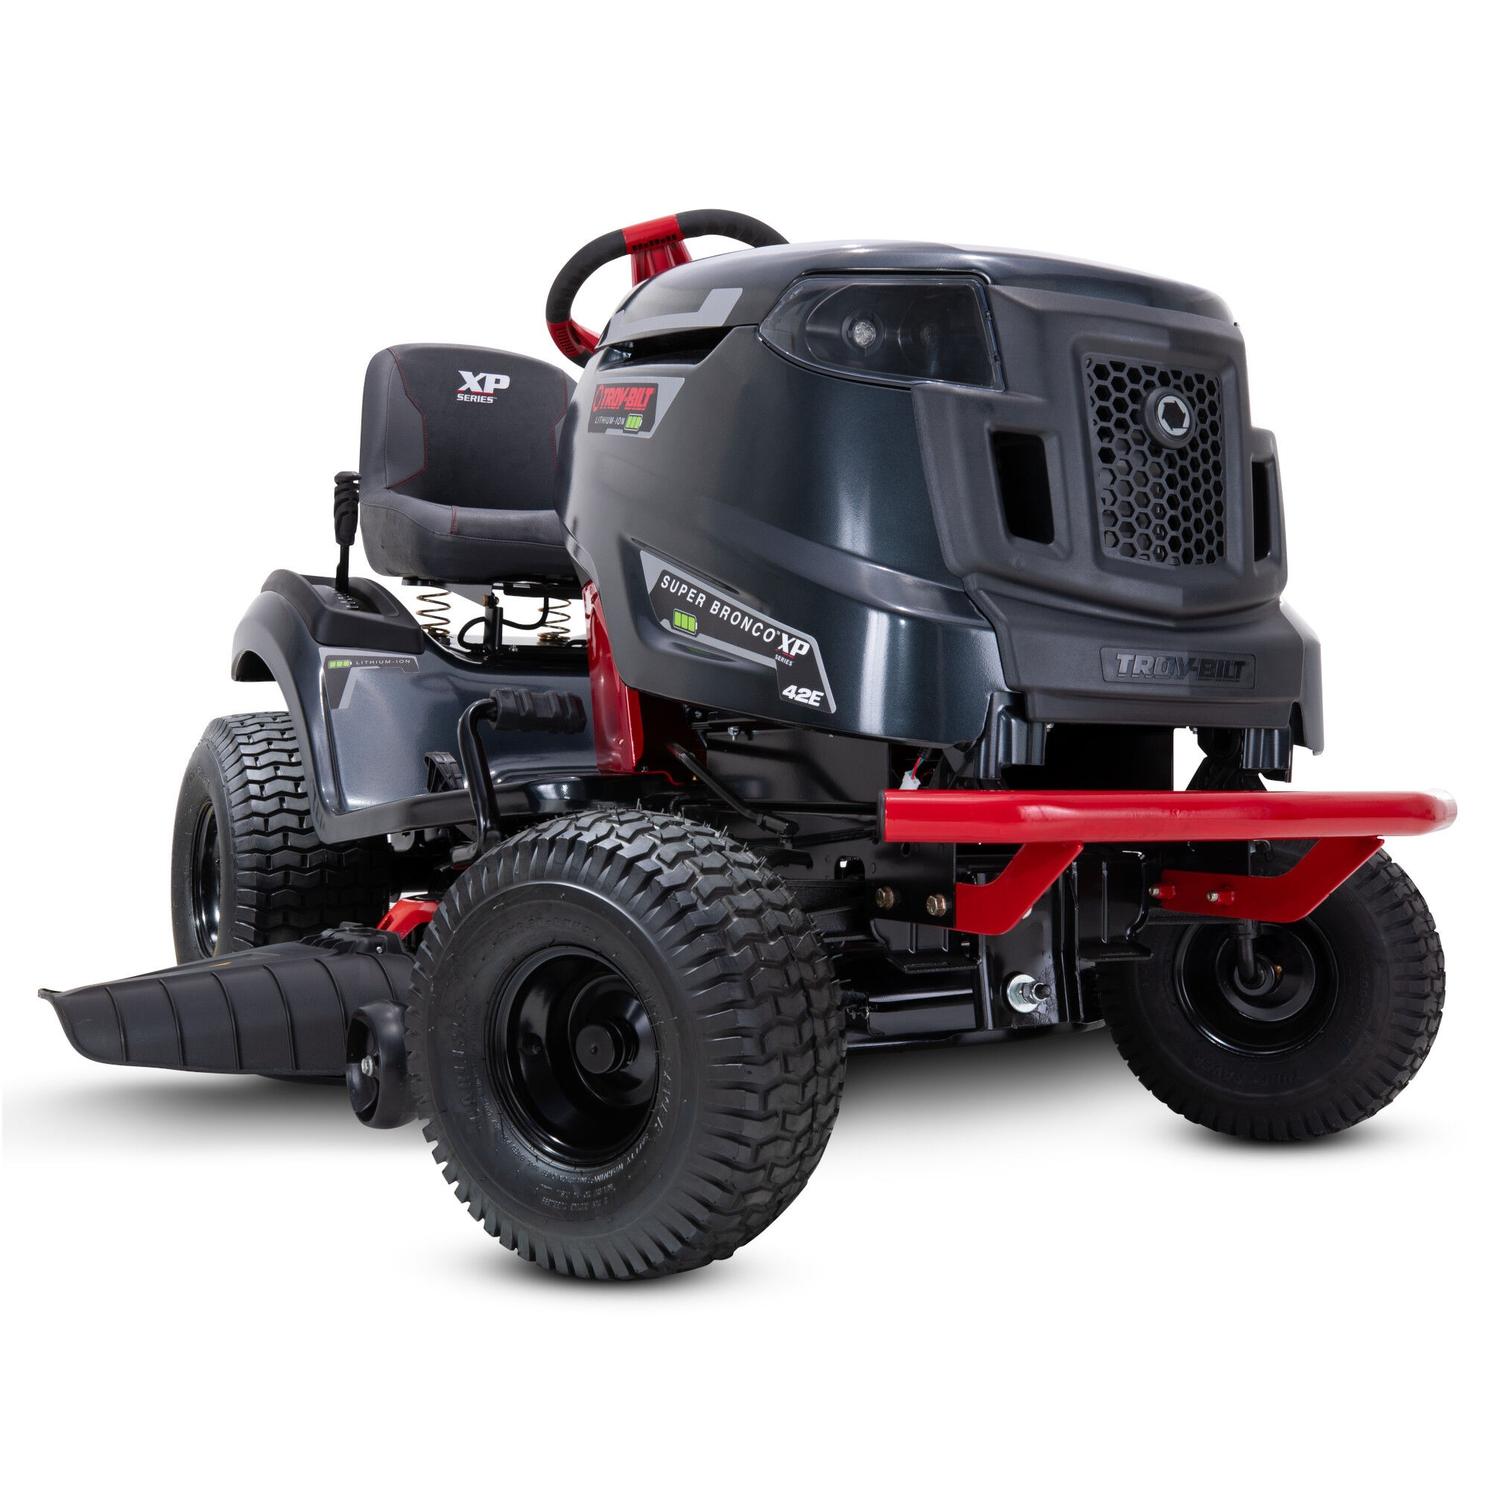 Troybilt Tracteurs de pelouse et jardin Super Bronco 42E XP